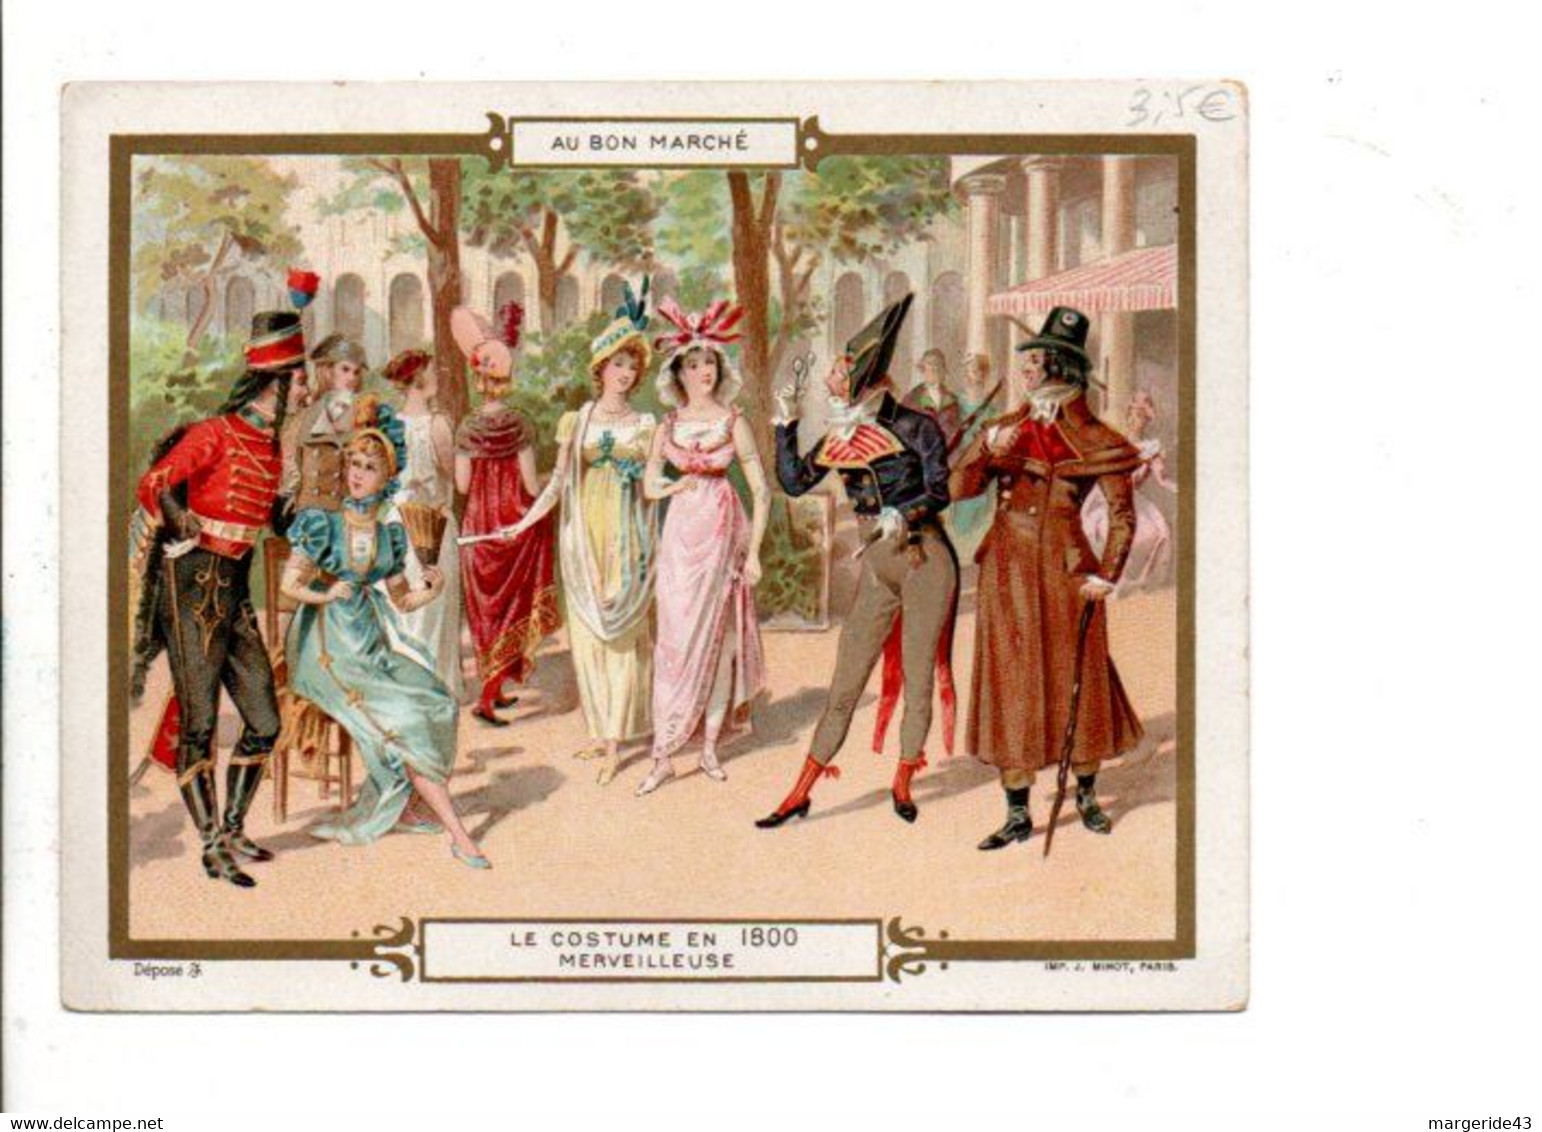 CHROMOS AU BON MARCHE - LE COSTUME EN 1800 - MERVEILLEUSE - Au Bon Marché